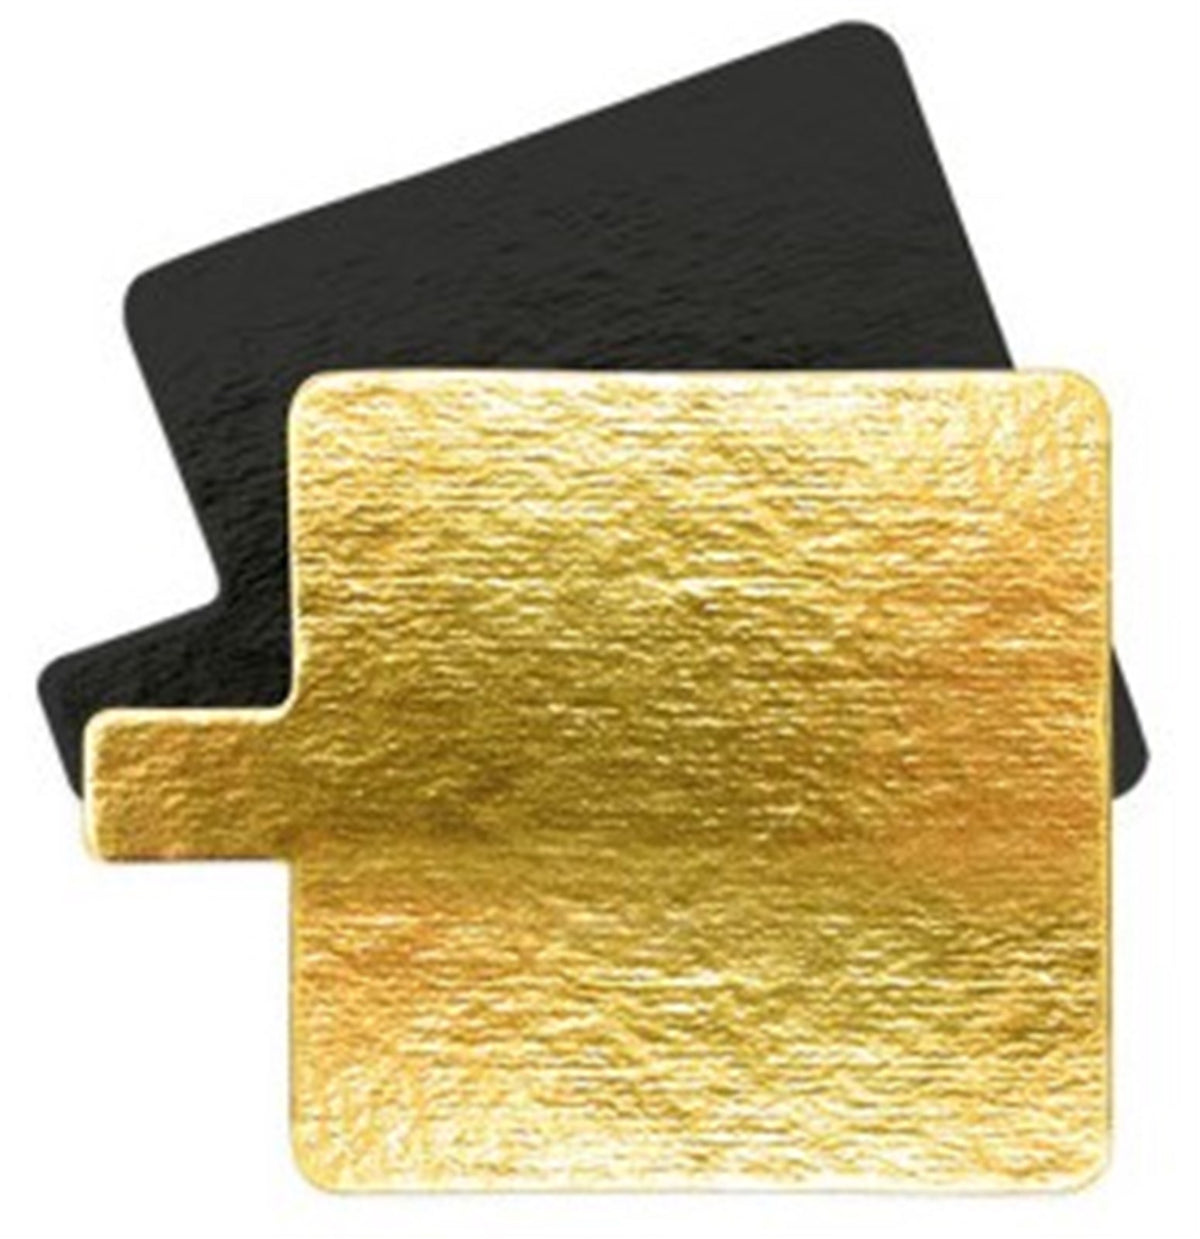 10er Set Tortenhalter gold/schwarz quadratisch 8cm in Gold/Schwarz präsentiert im Onlineshop von KAQTU Design AG. Platte ist von Scrap Cooking